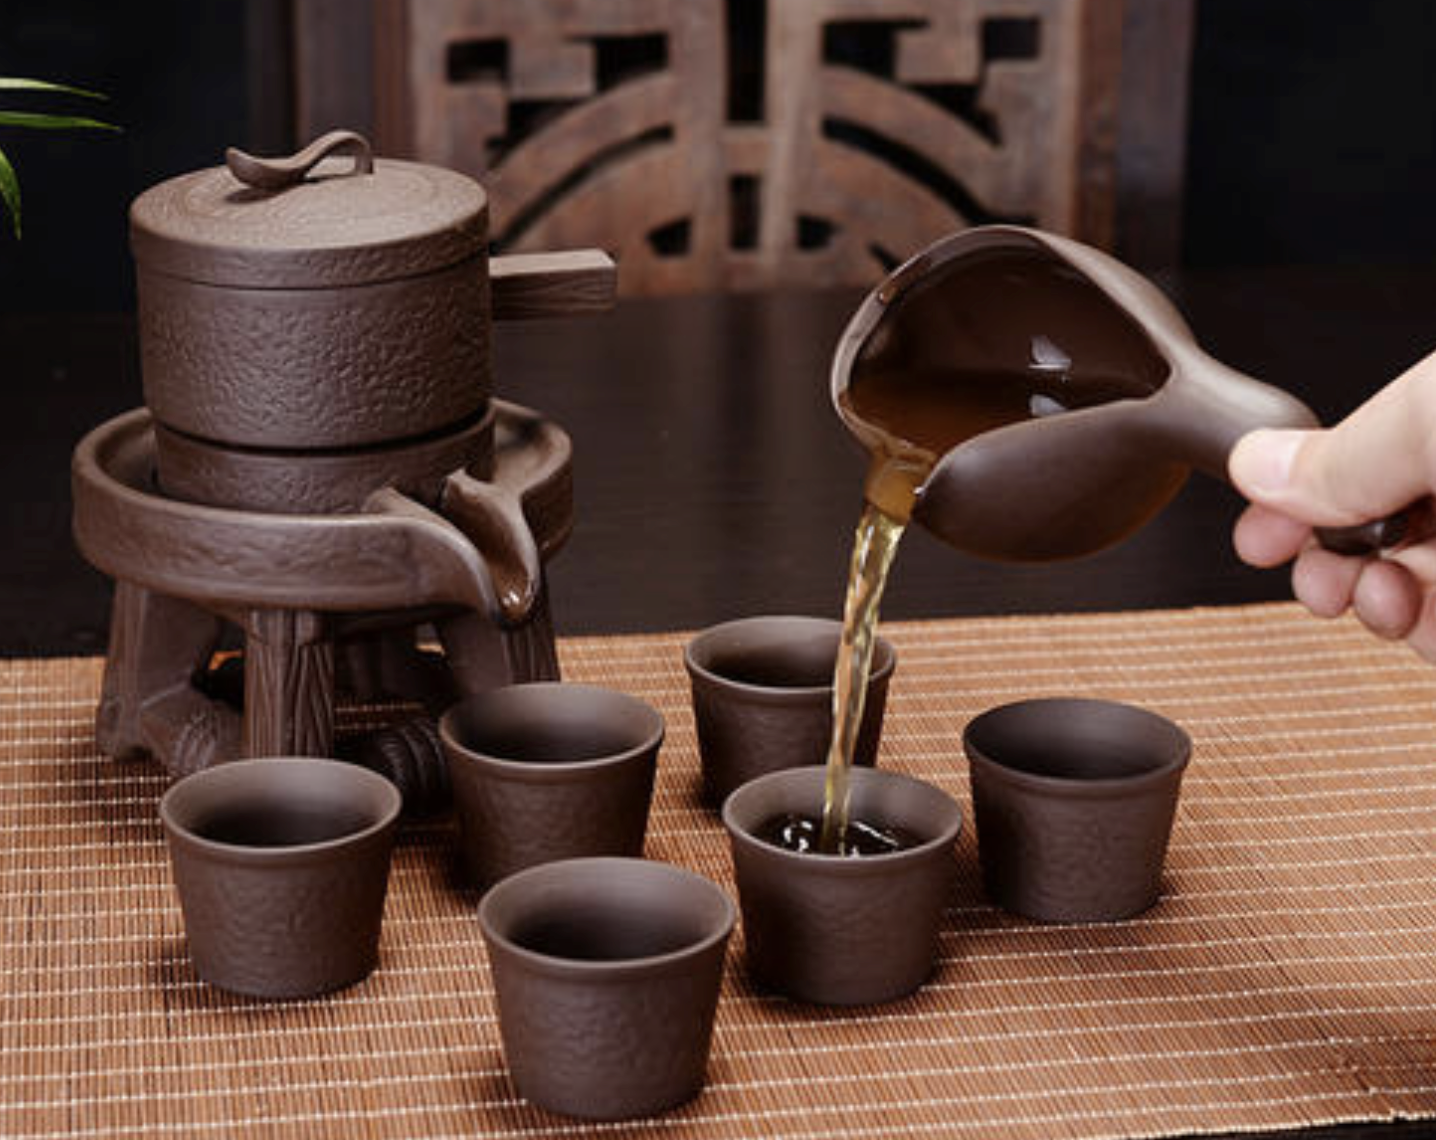 懒人茶具推荐|2021年十款超好看的家用茶具